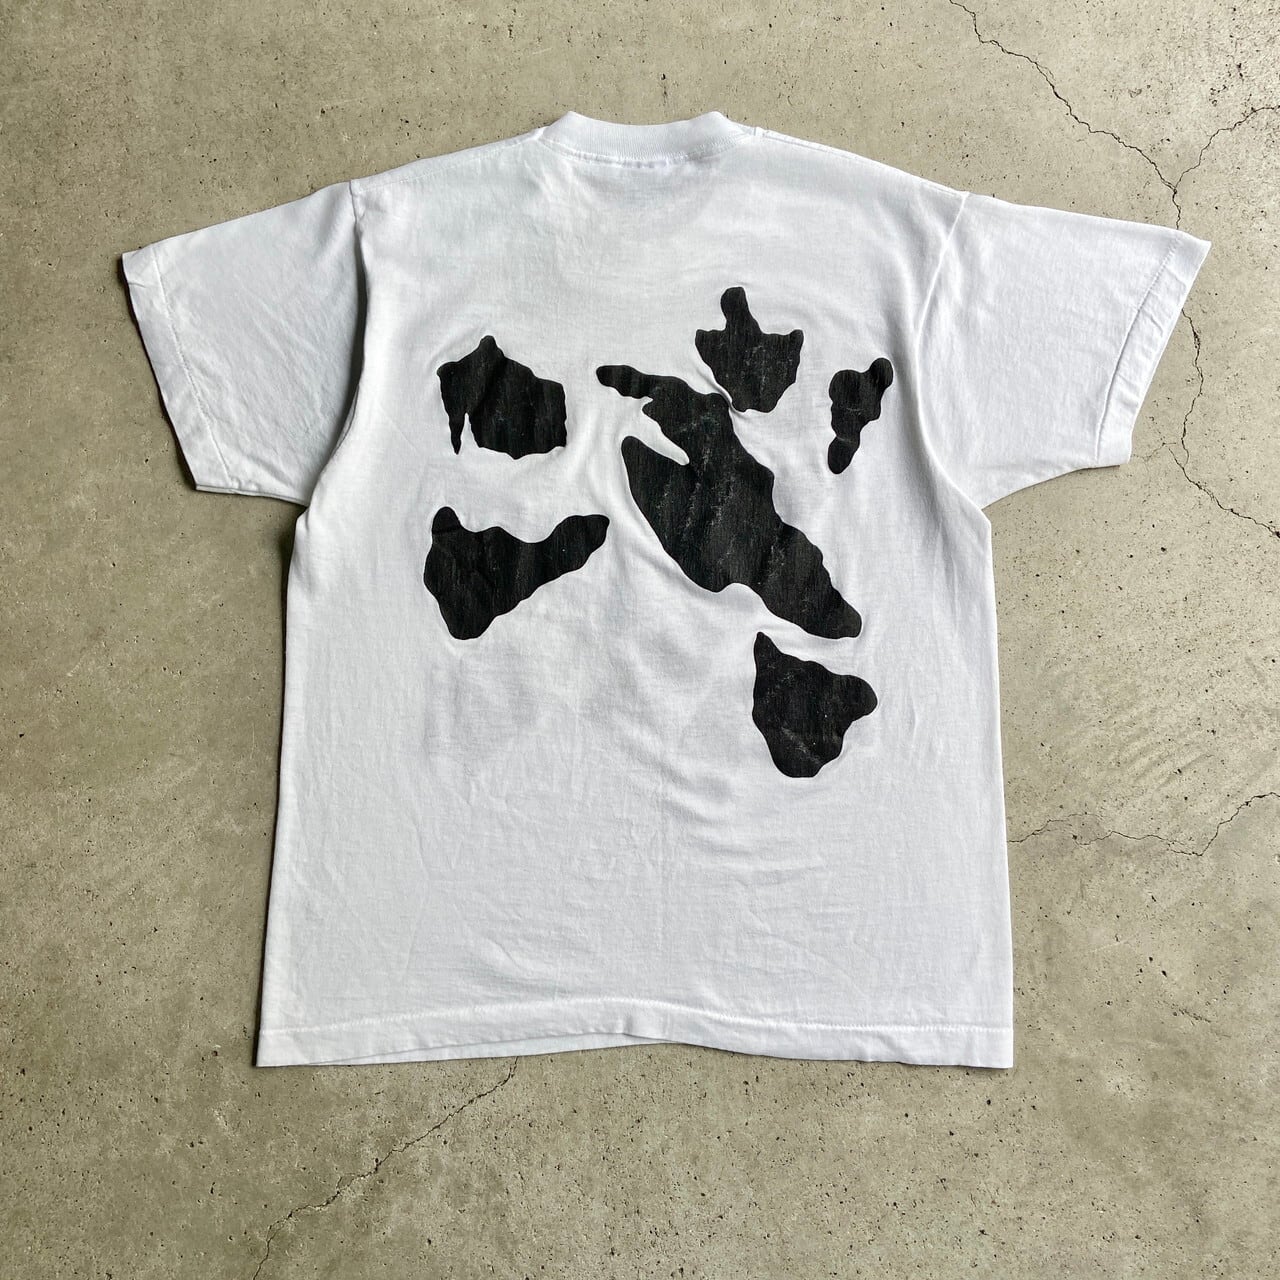 90s ビンテージ アート 牛 犬 Tシャツ 動物 Tシャツ